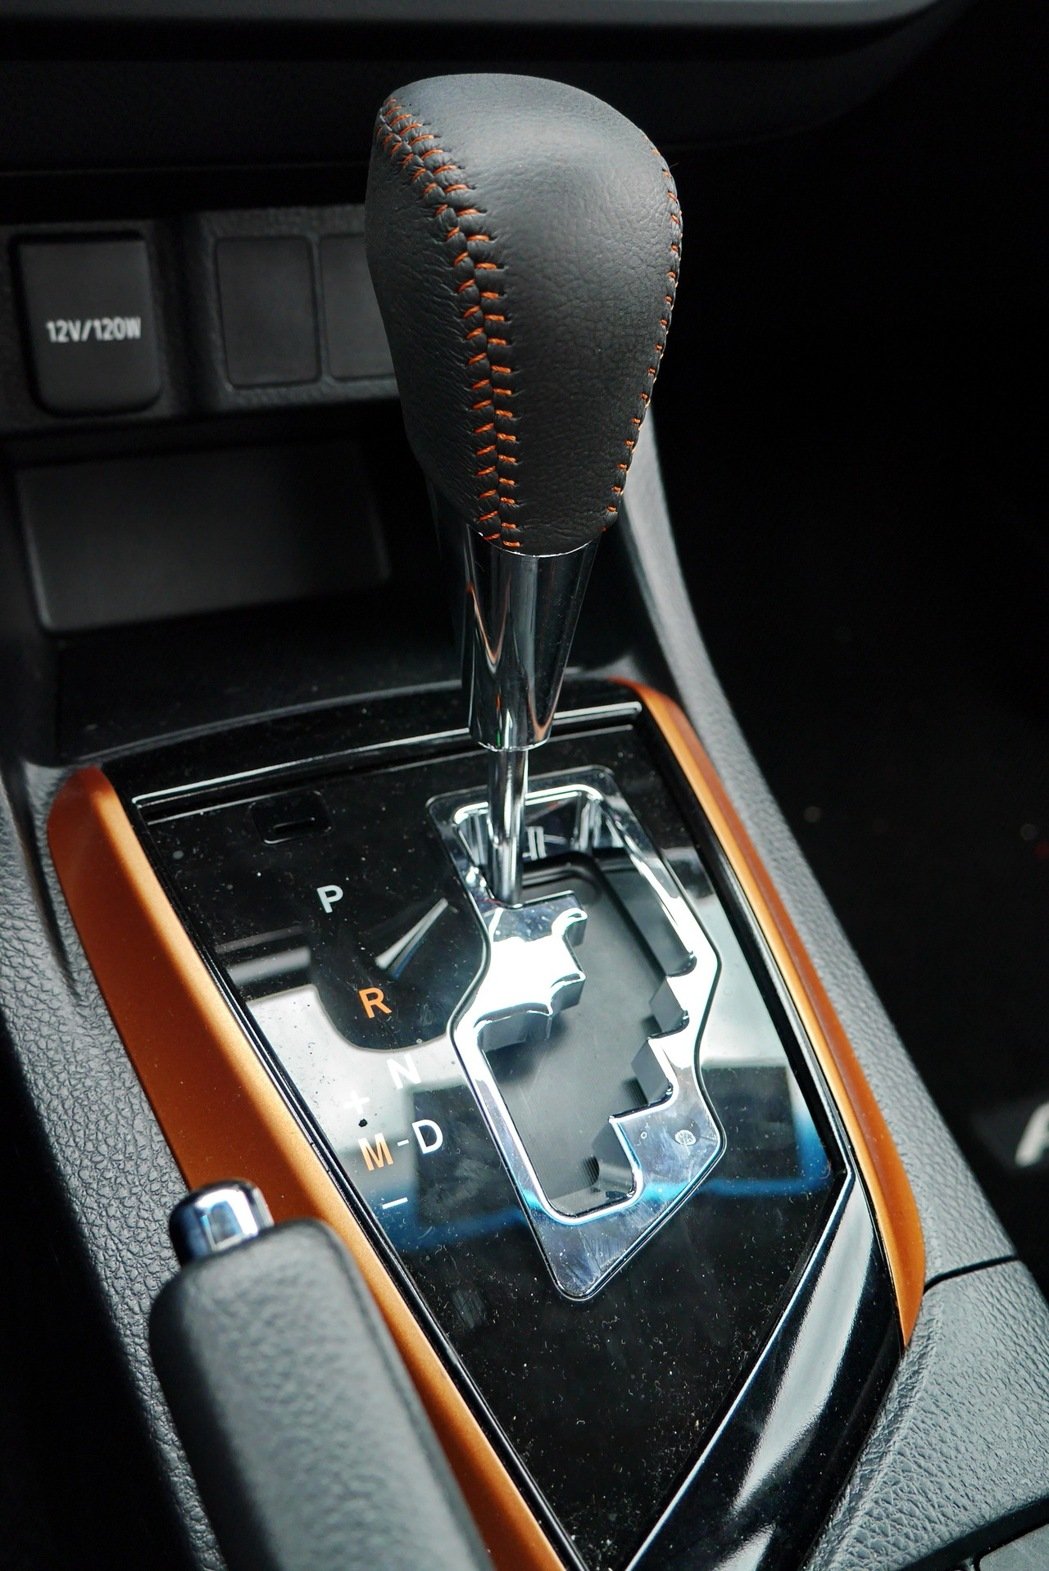 
Một số điểm nhấn màu cam như trên bảng táp-lô, cụm điều khiển trung tâm và chỉ khâu tạo cảm giác đối lập cho không gian nội thất. Để tạo vẻ thể thao cho nội thất, hãng Toyota còn đưa một số chi tiết giả sợi carbon vào trong Corolla Altis X.
